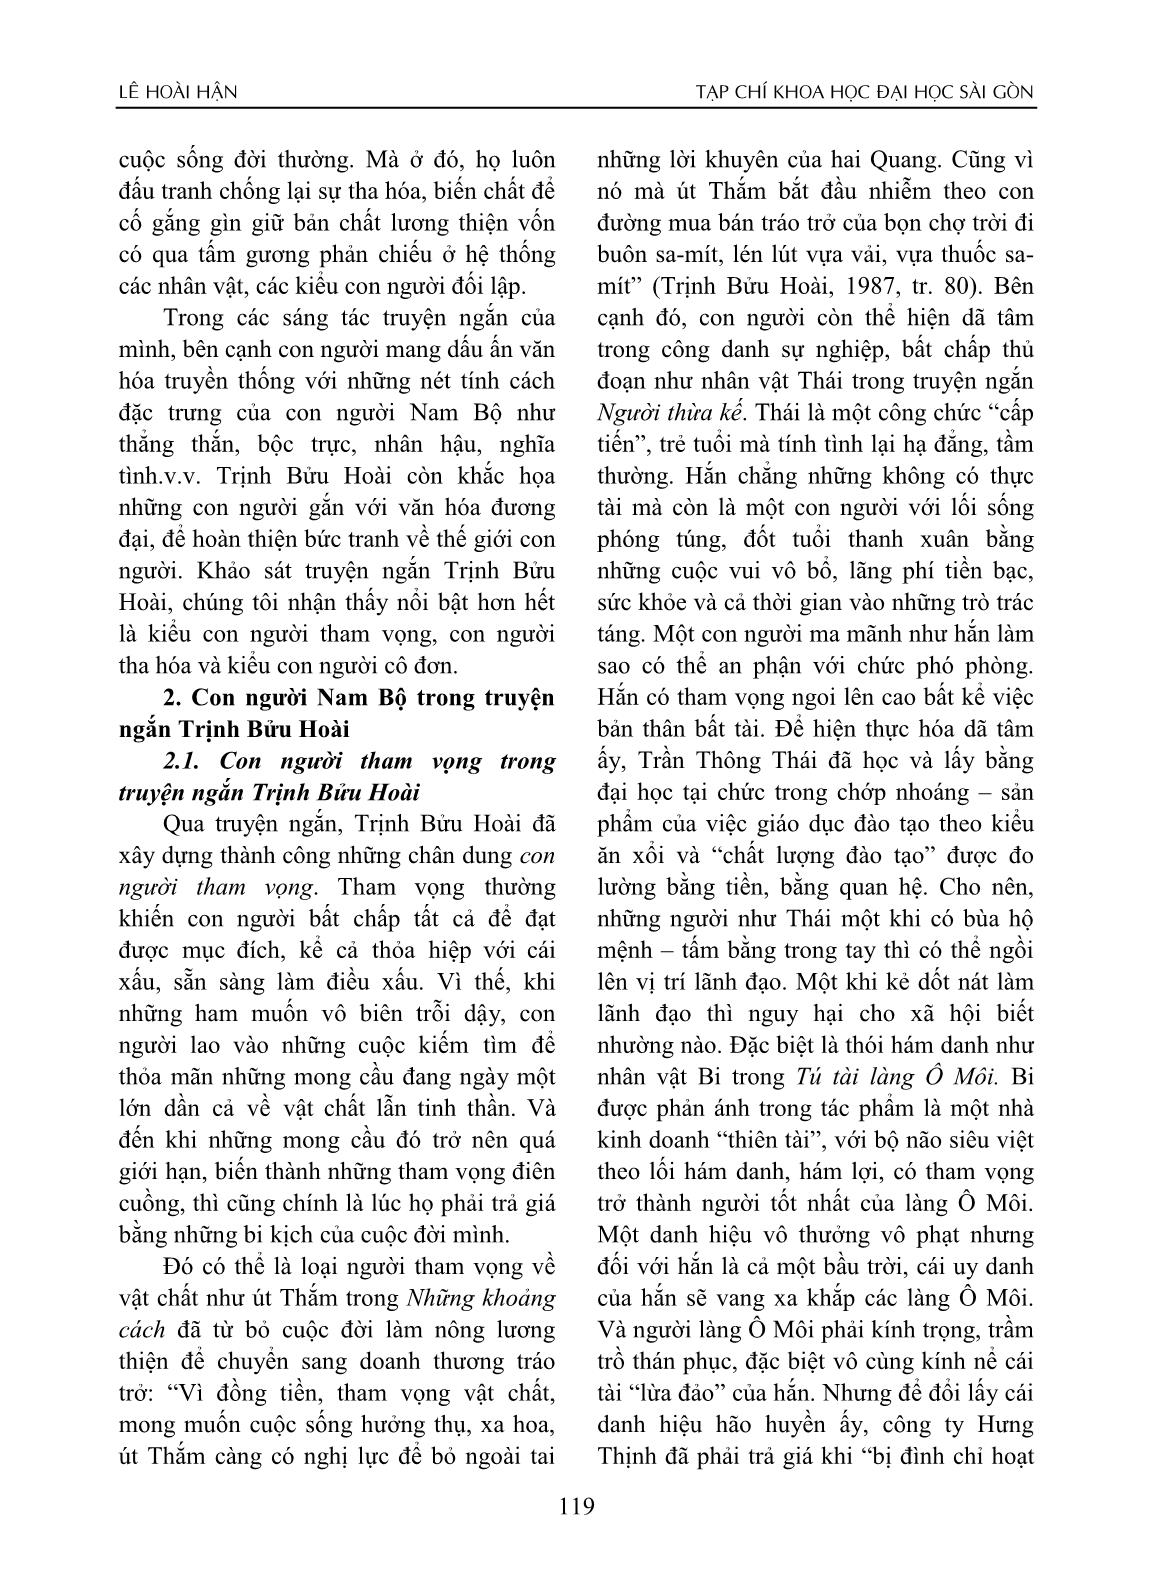 Con người Nam Bộ trong truyện ngắn Trịnh Bửu Hoài trang 2